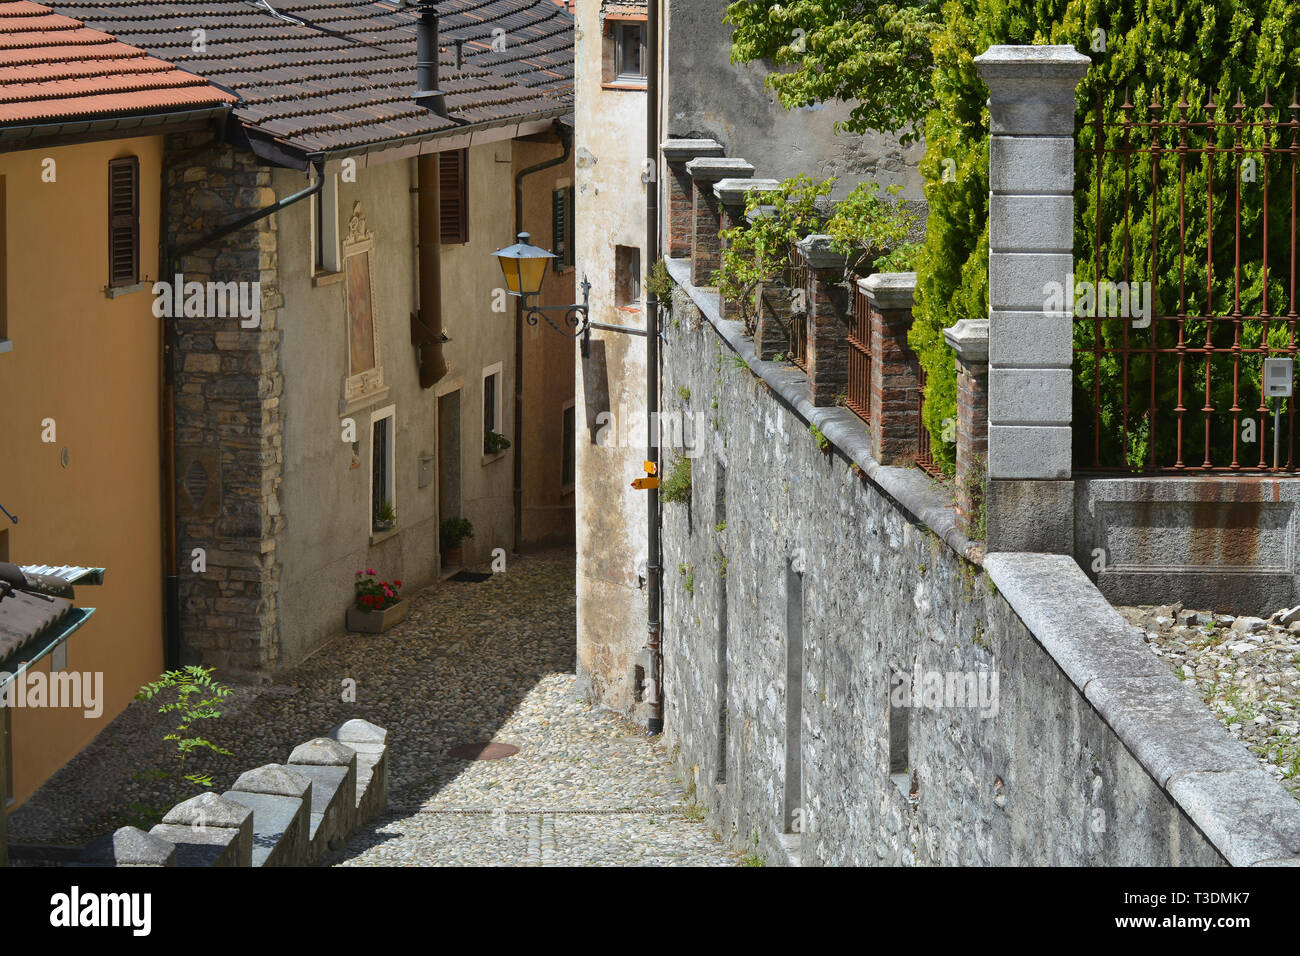 The village of Muggio at Breggia, Canton Ticino, Switzerland. Stock Photo